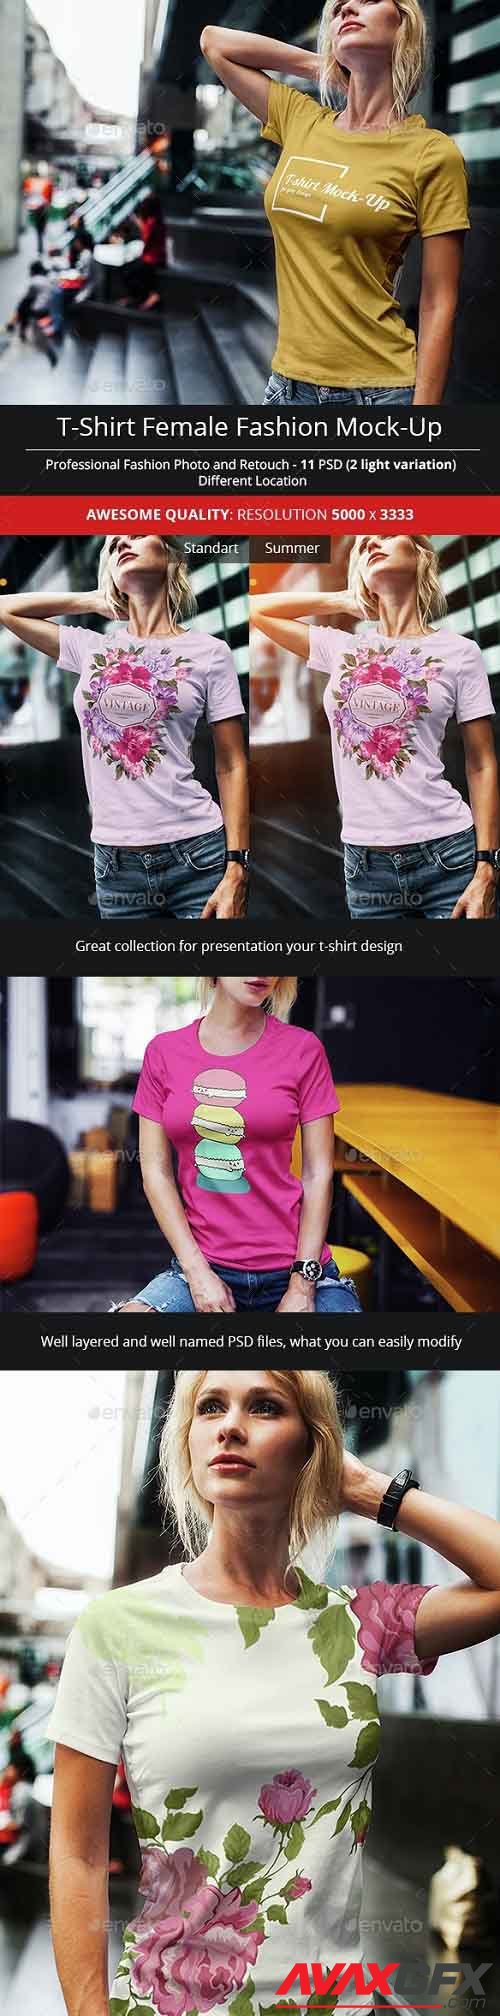 Female T-Shirt Fashion Mock-Up - 14707045